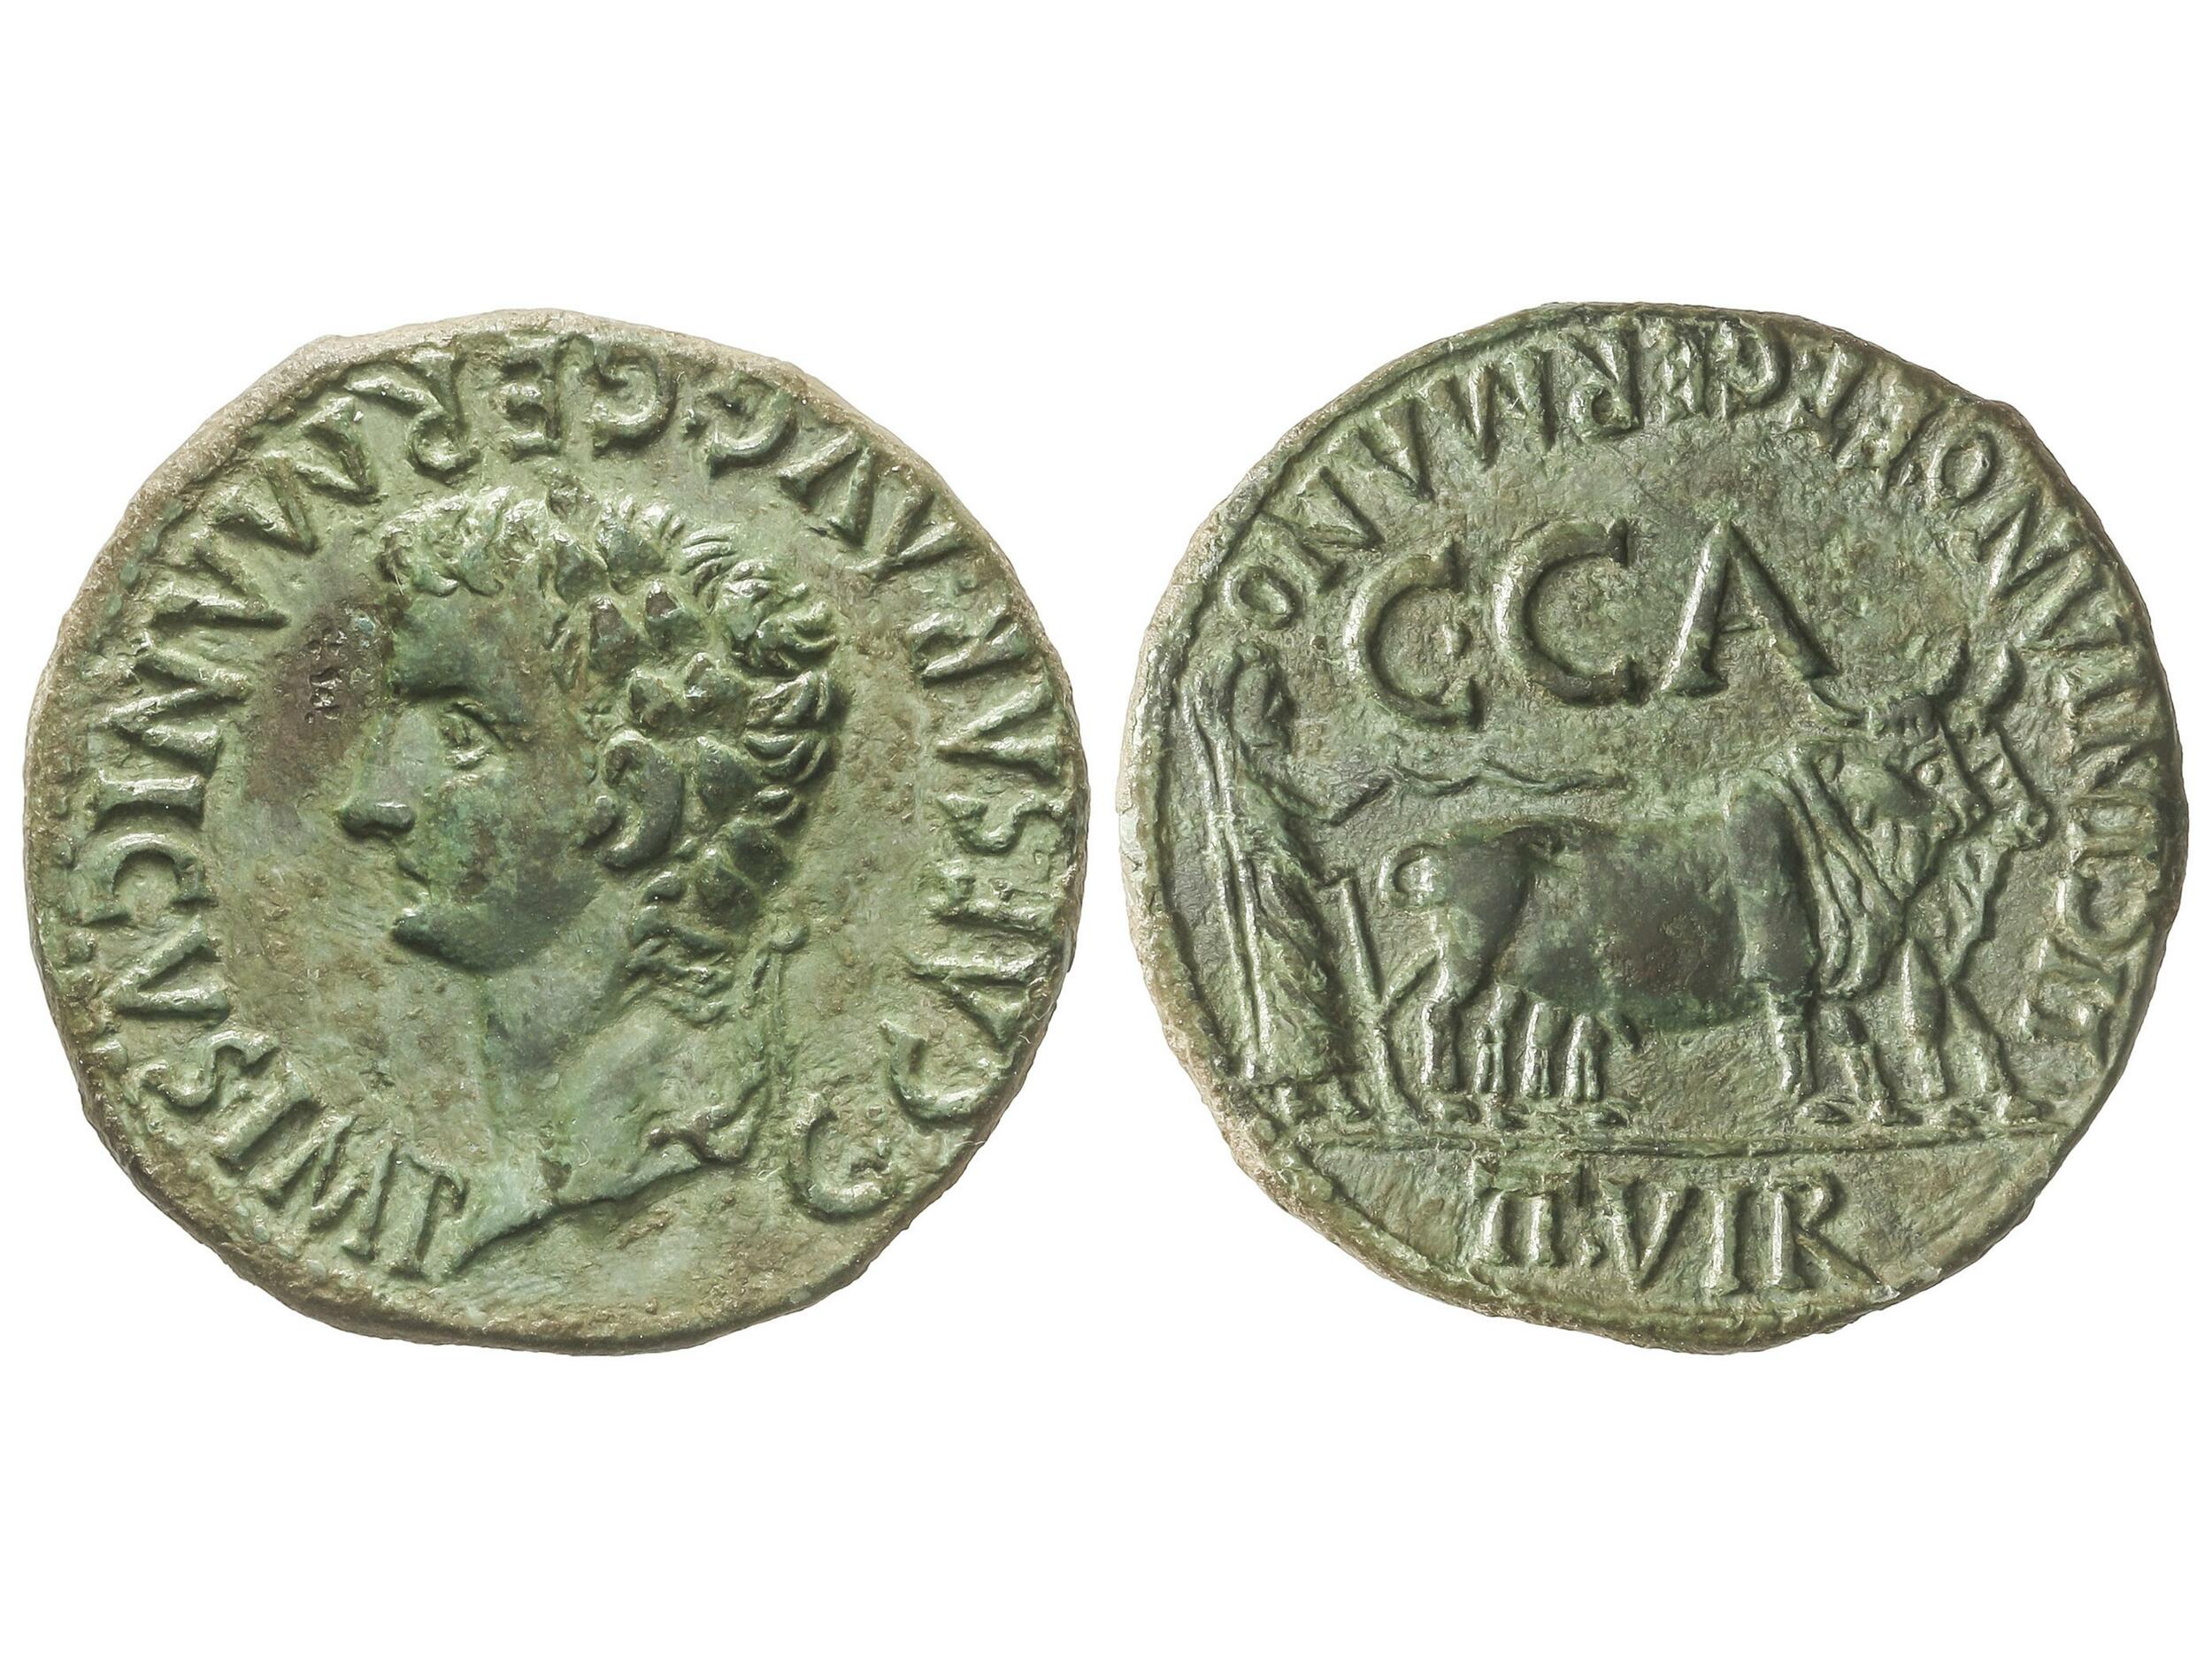 10.10.20: Ancient Coins - Celtic Coins - Spain